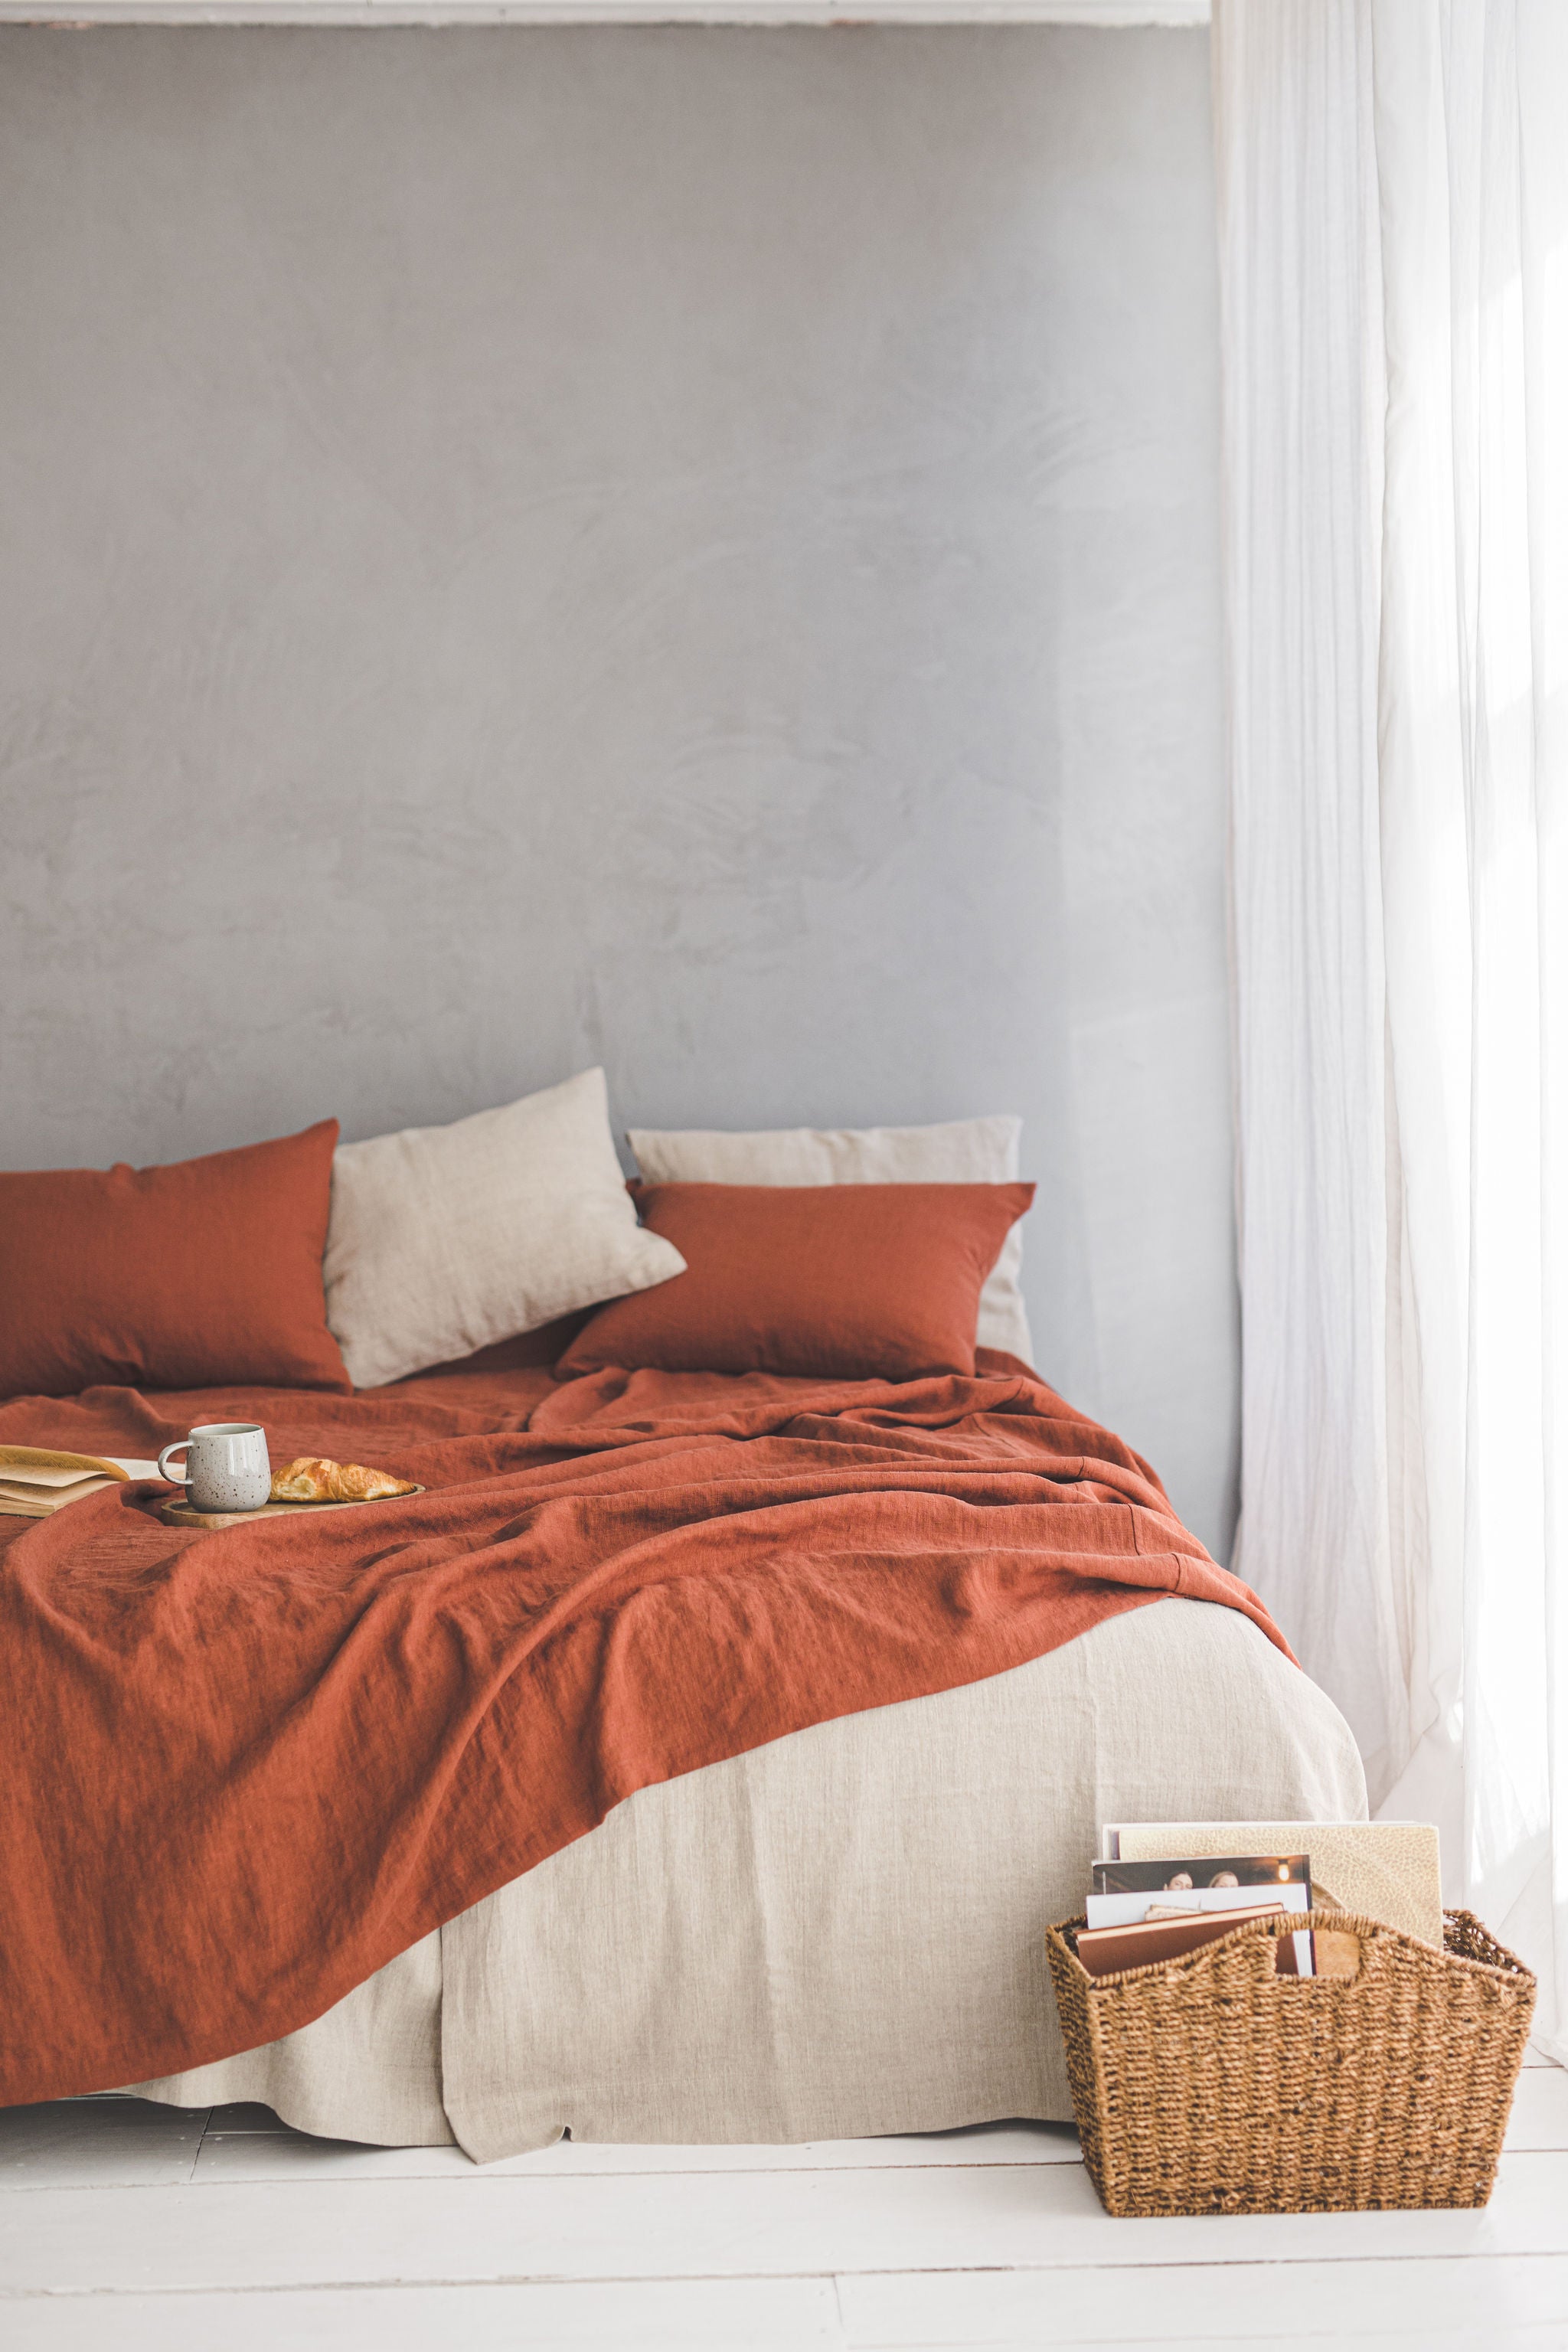 Burnt orange linen bedspread